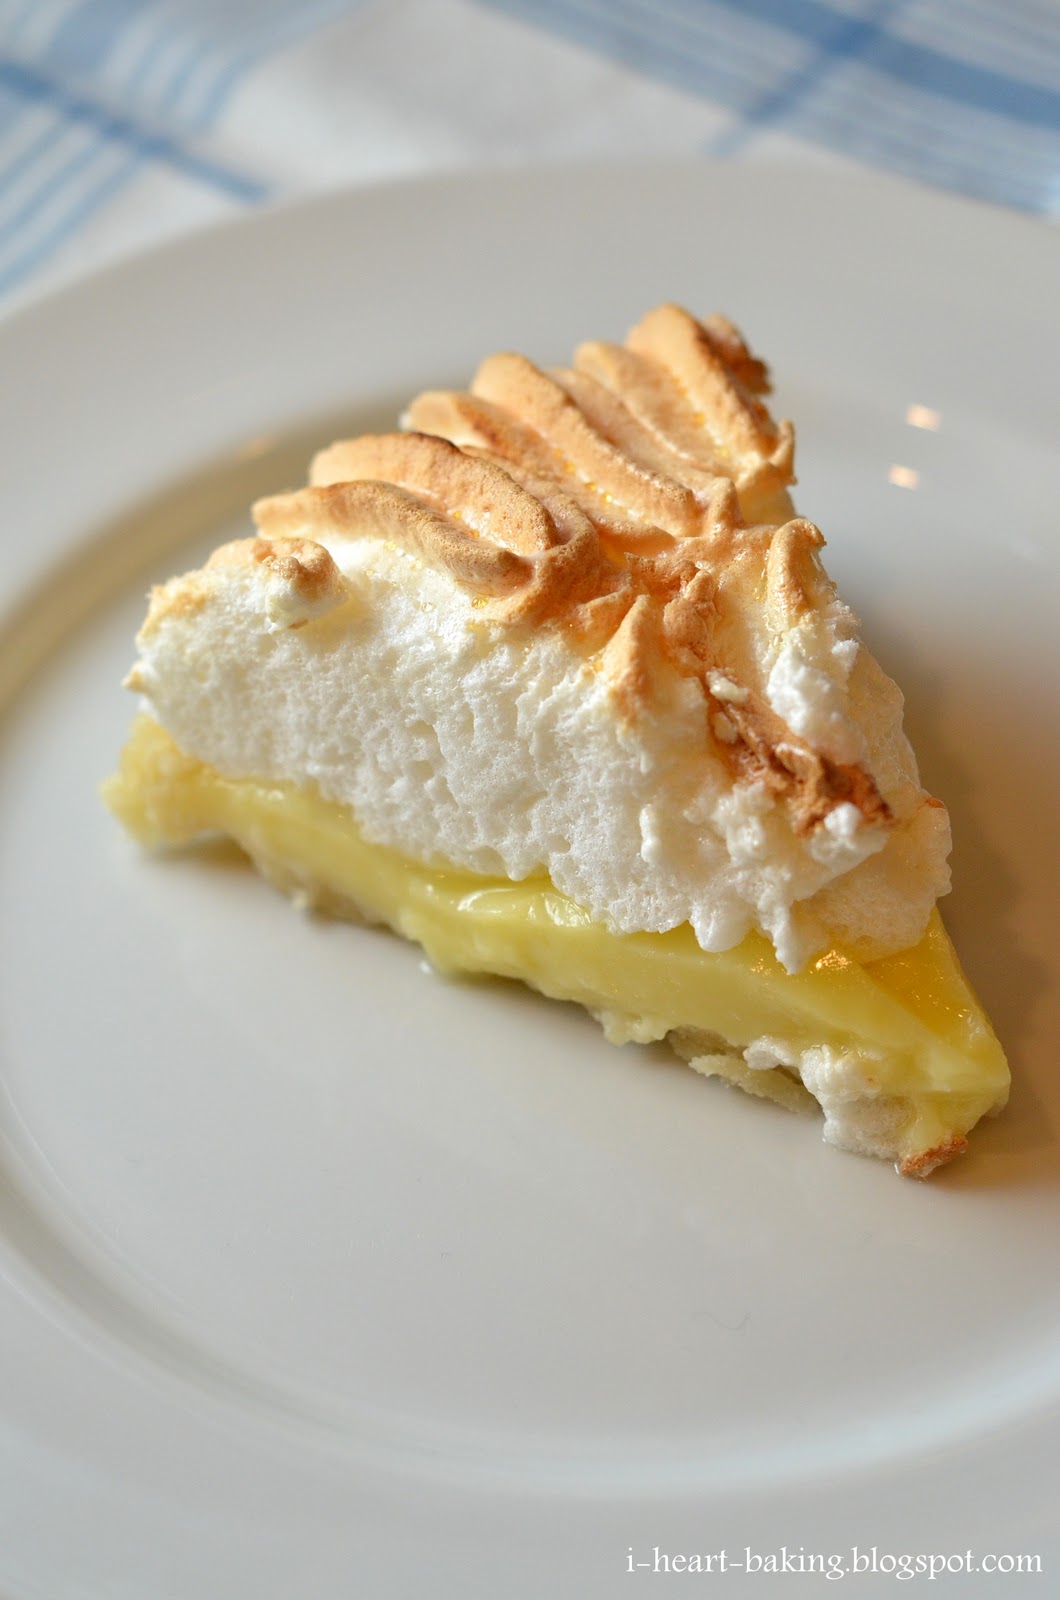 i heart baking!: lemon meringue pie